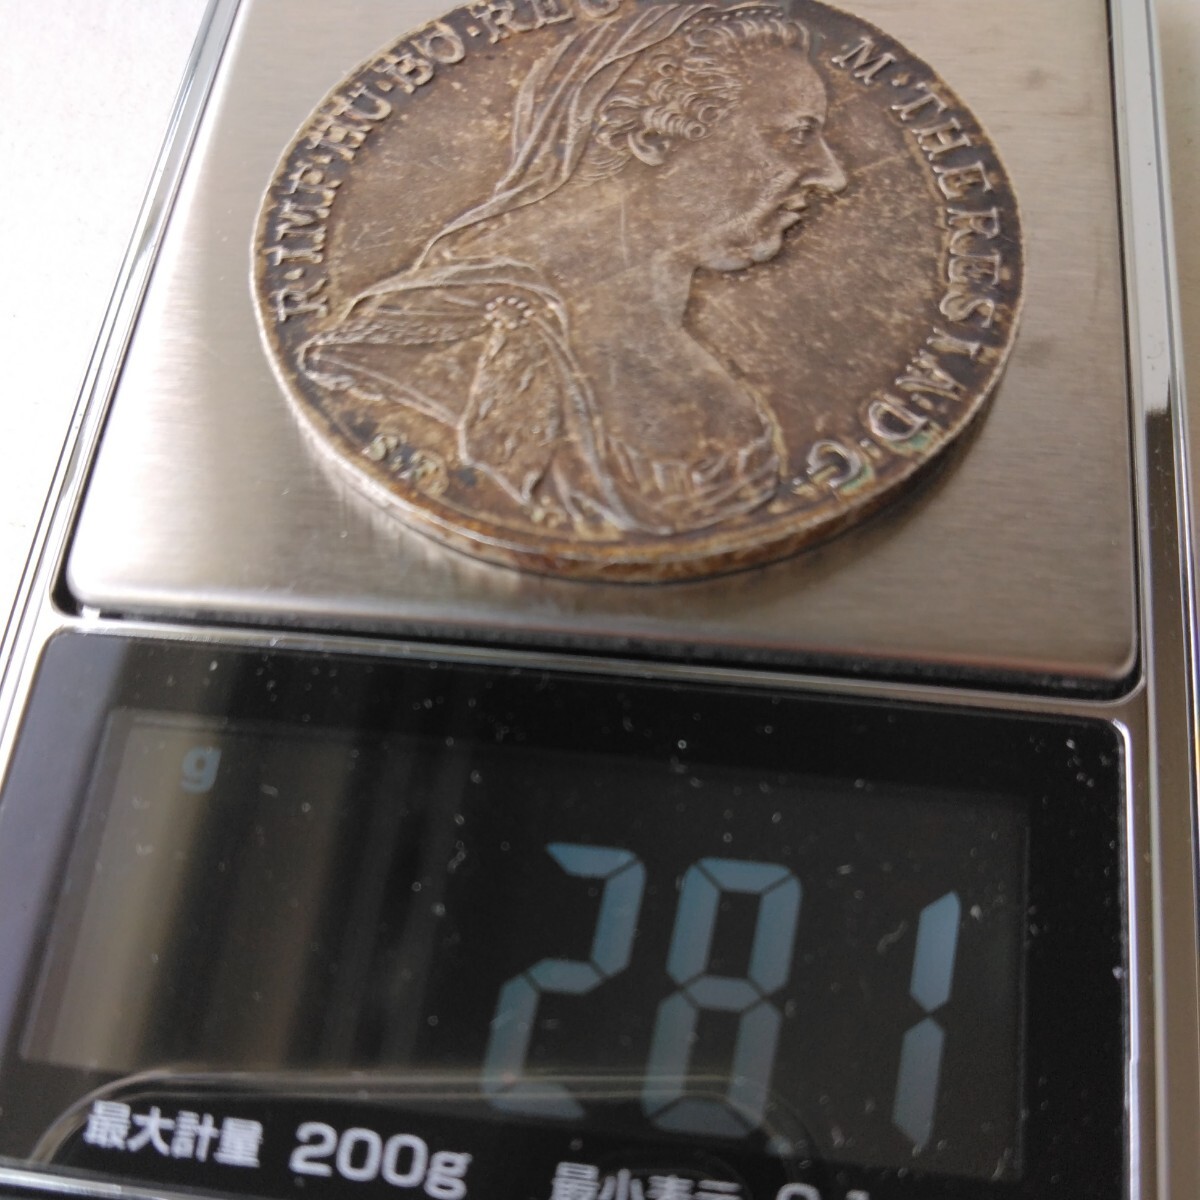 オーストリア銀貨のターラー銀貨です当時の銀貨か、後の発行か分かりません。鑑定は受けておりません。写真で、判断してください。の画像3